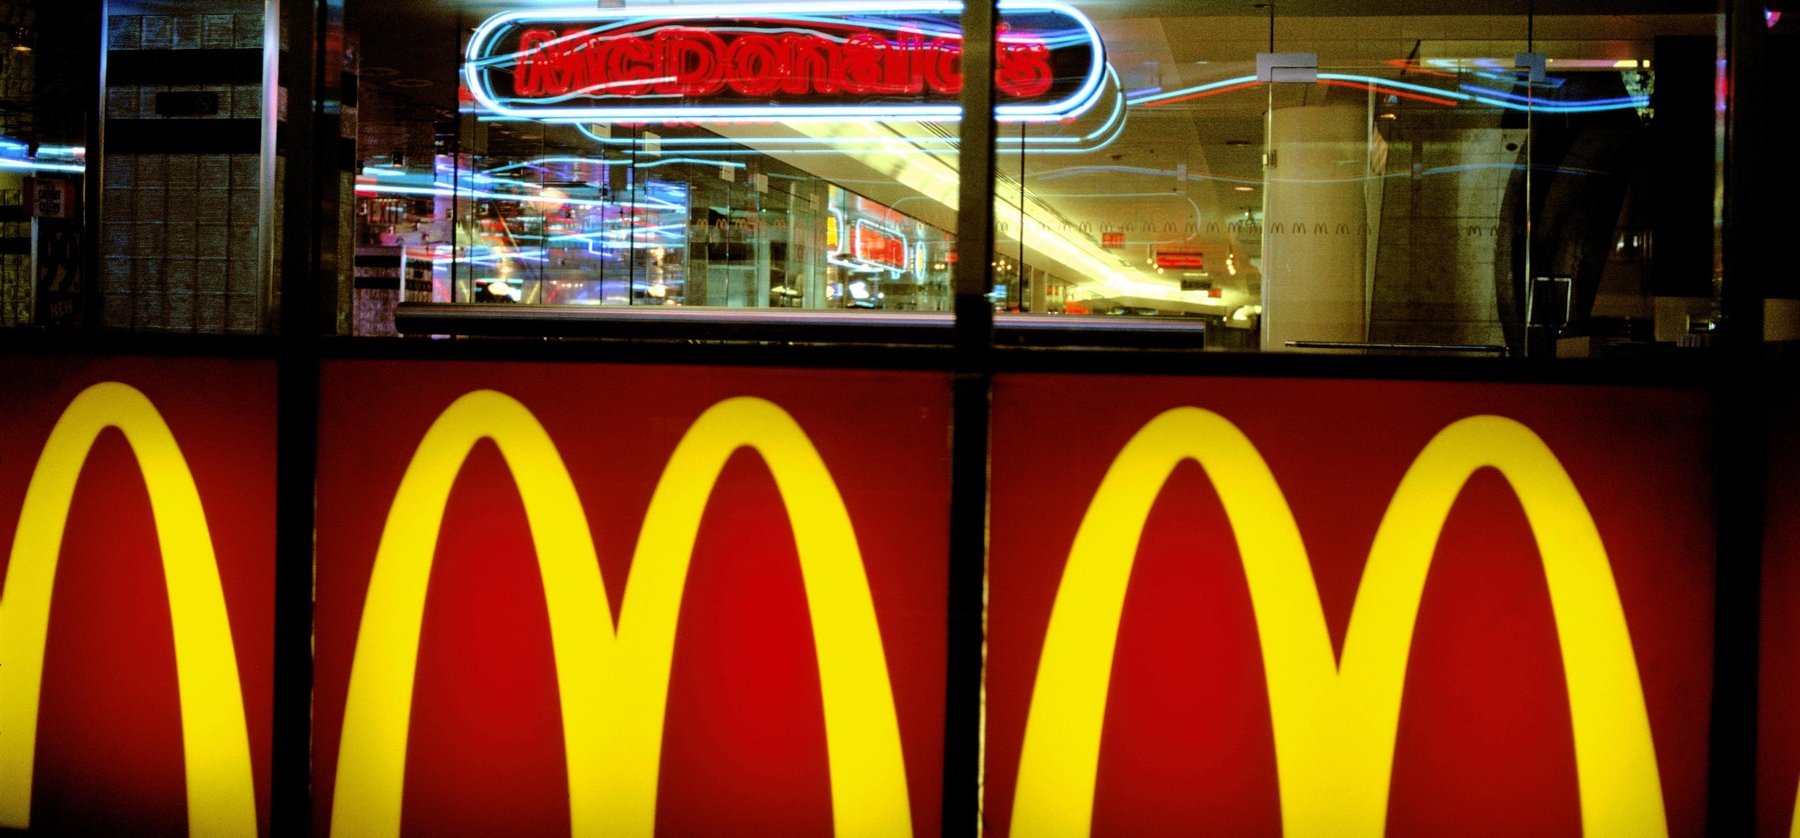 Egy hihetetlen történet: így tarolta le a McDonald's az egész világot